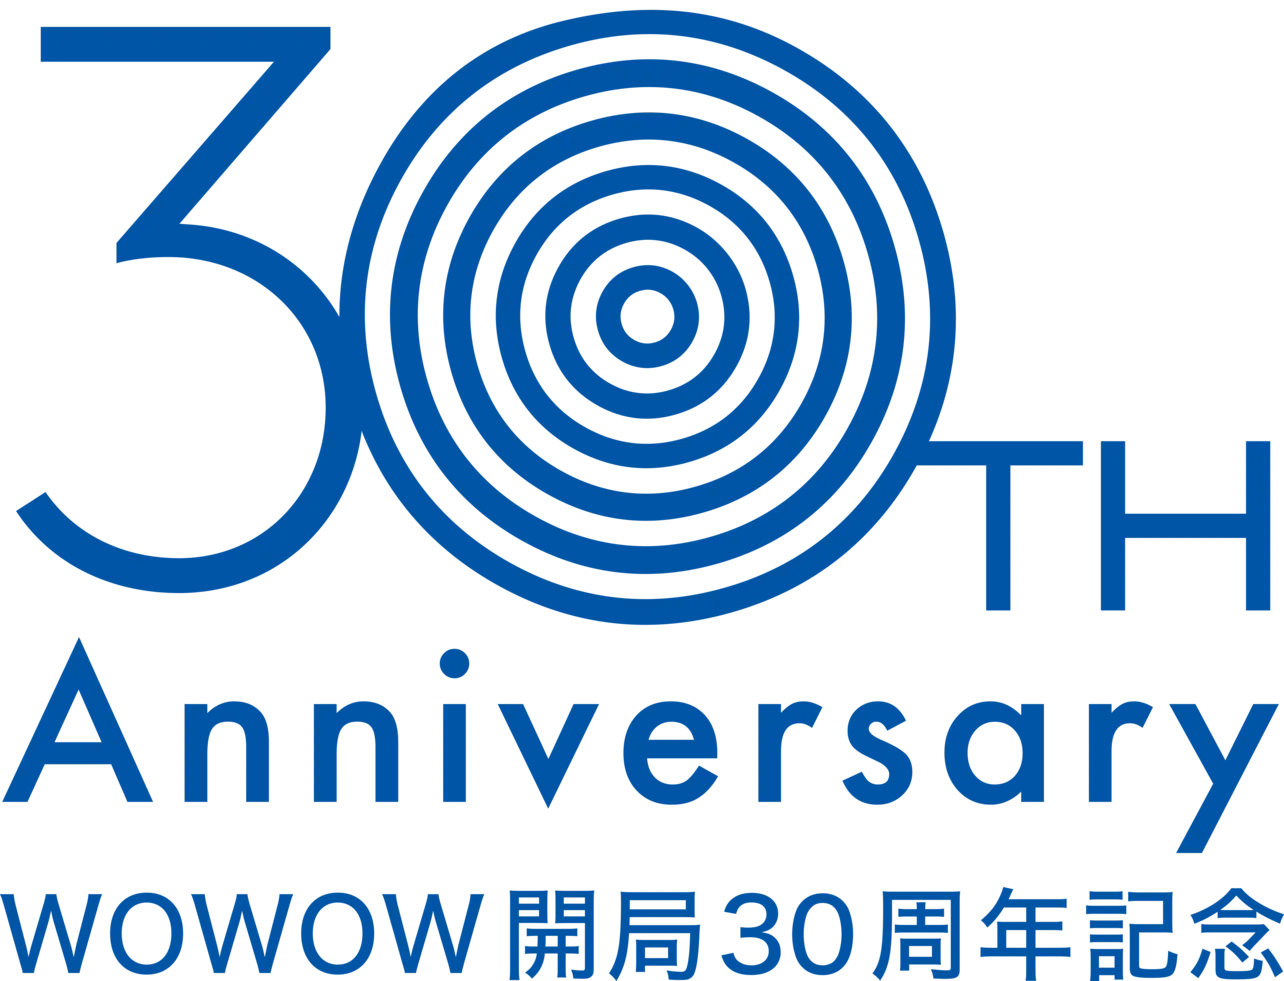 2021年は、WOWOW30周年を記念した企画や作品が盛りだくさん！